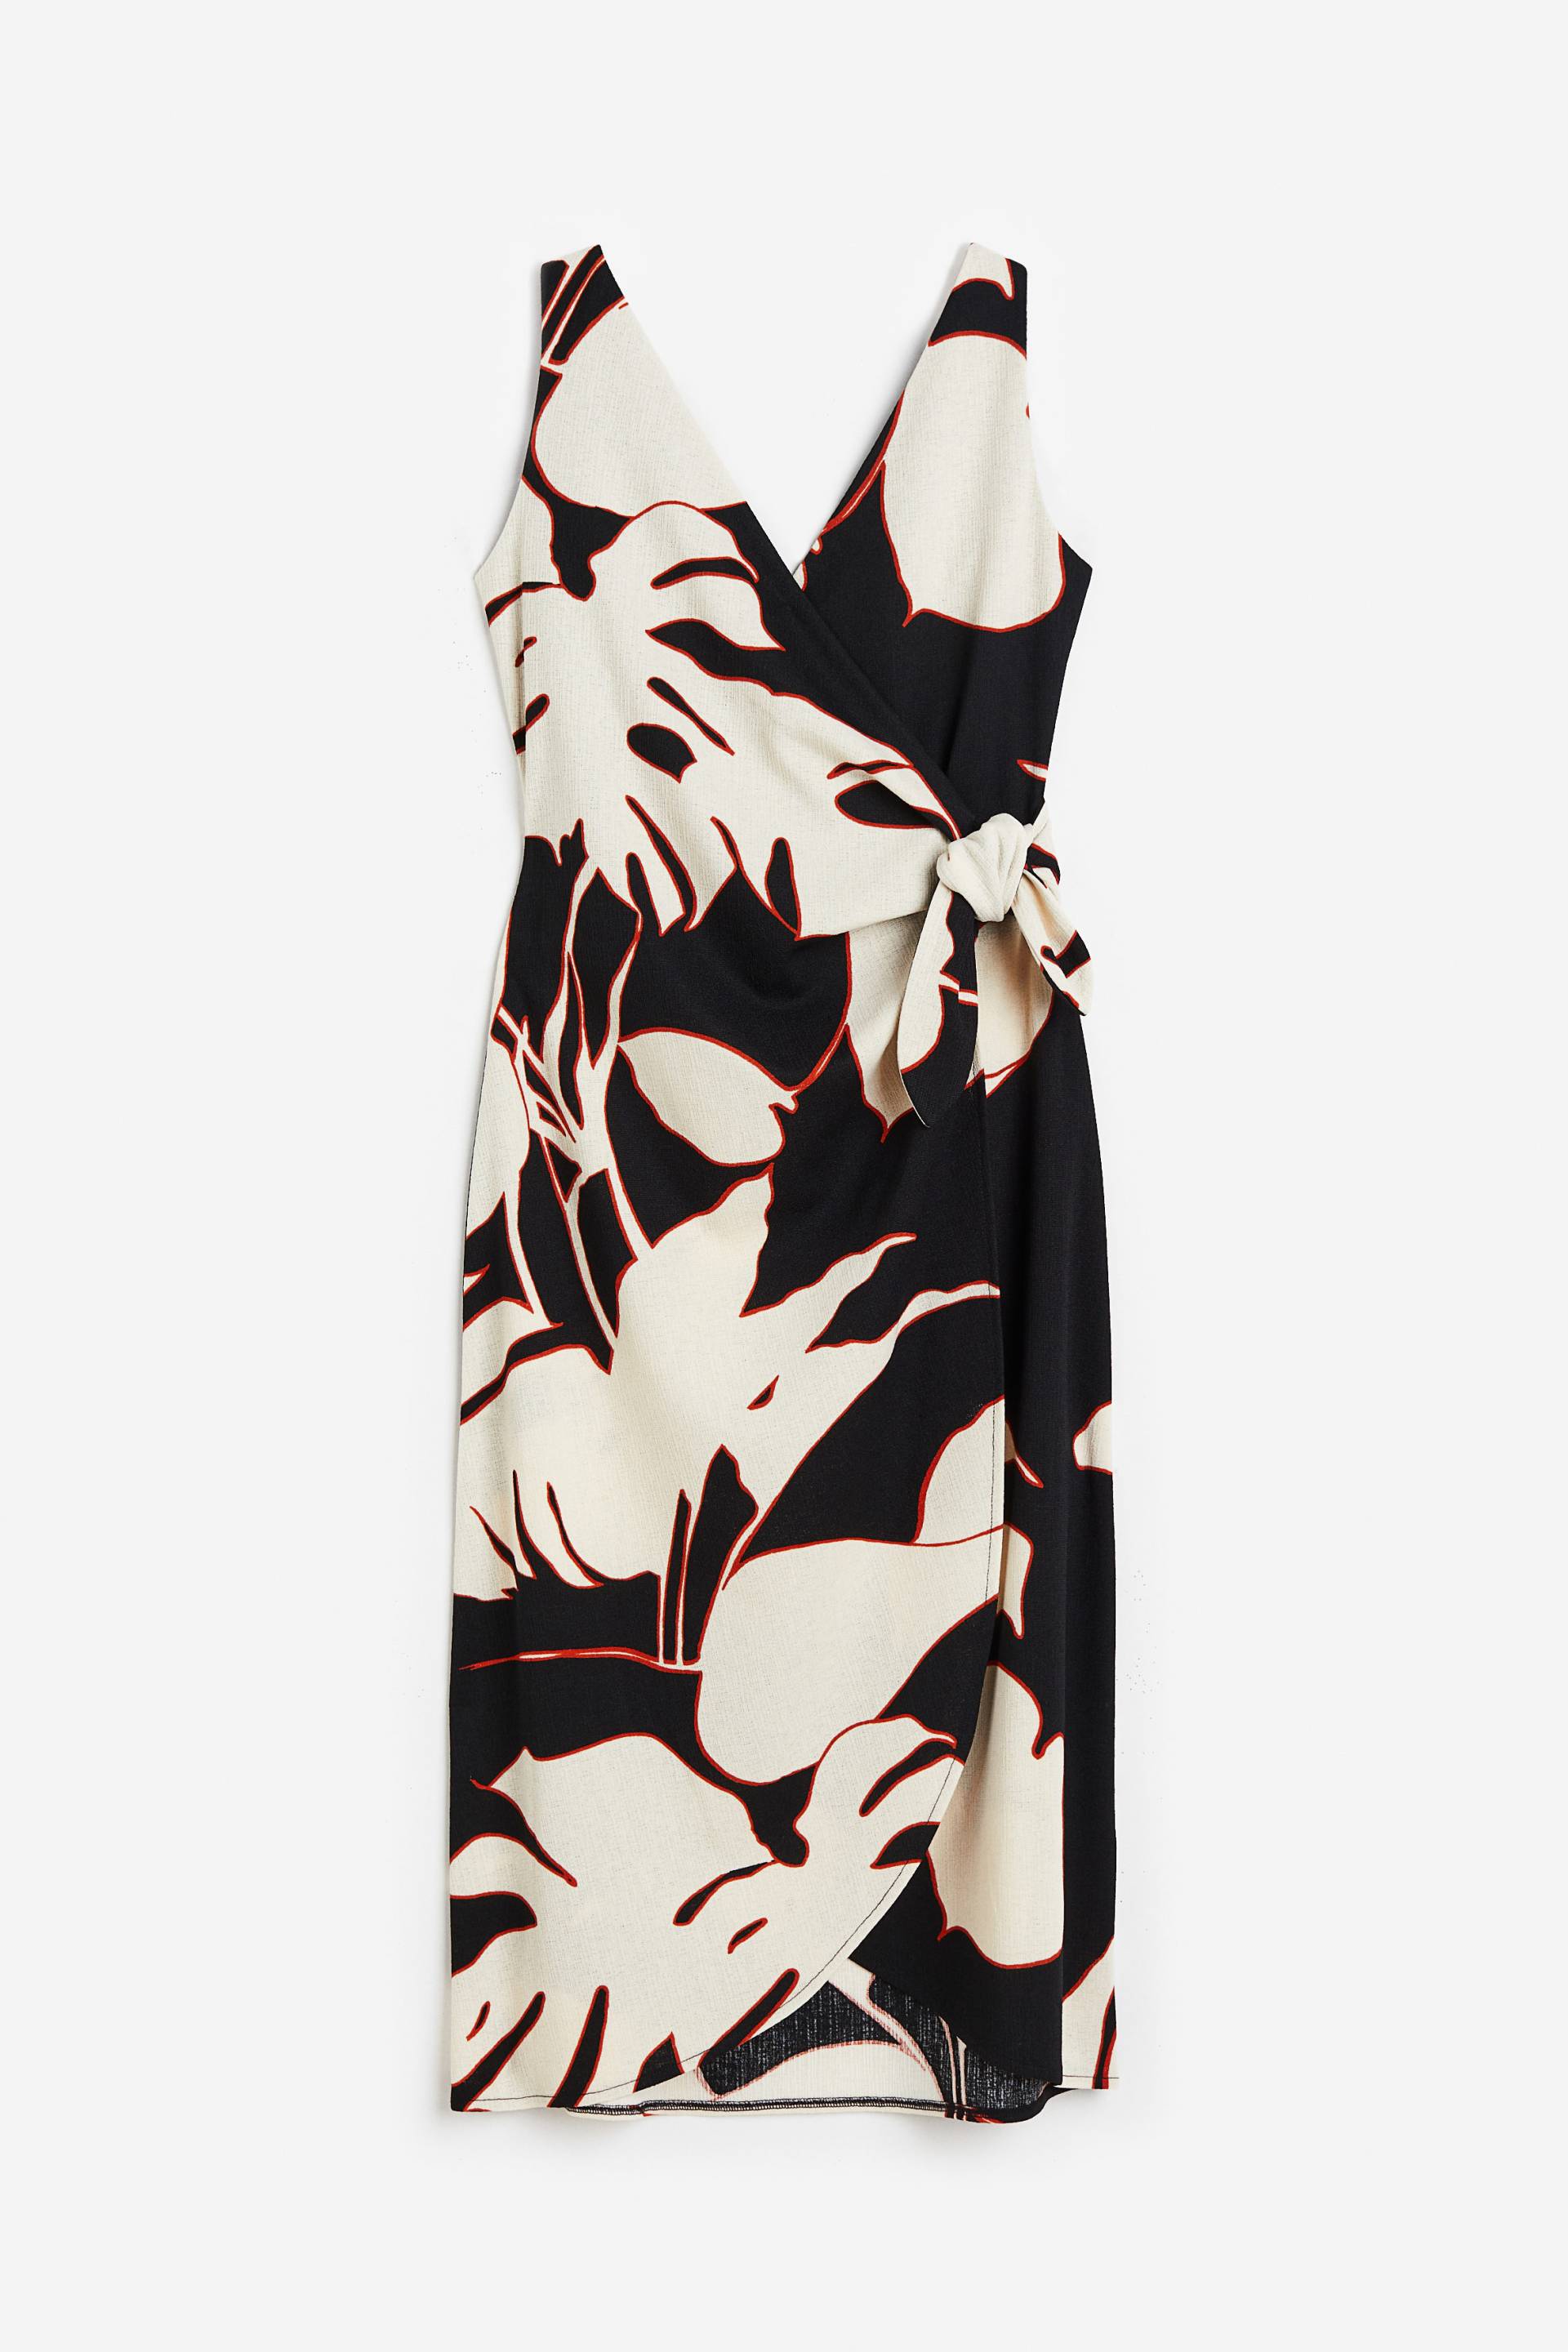 H&M Wickelkleid mit V-Ausschnitt Schwarz/Blätter, Alltagskleider in Größe S. Farbe: Black/leaves von H&M